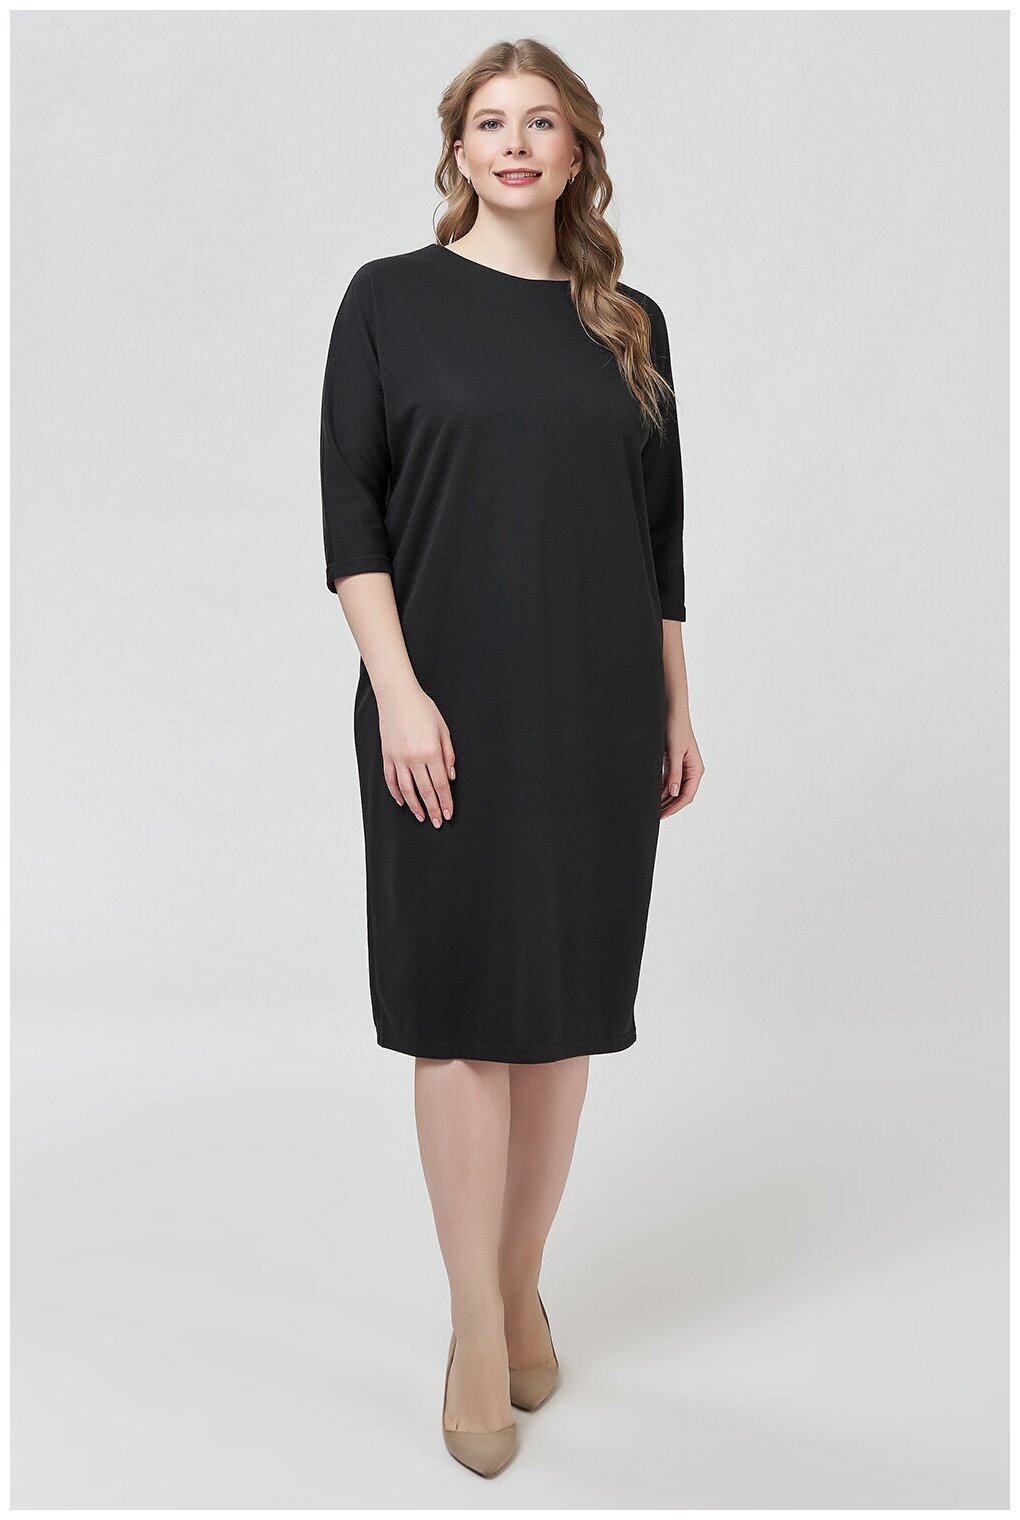 Платье миди классическое черное прямого кроя 3/4 рукав круглый вырез plus size (большие размеры)